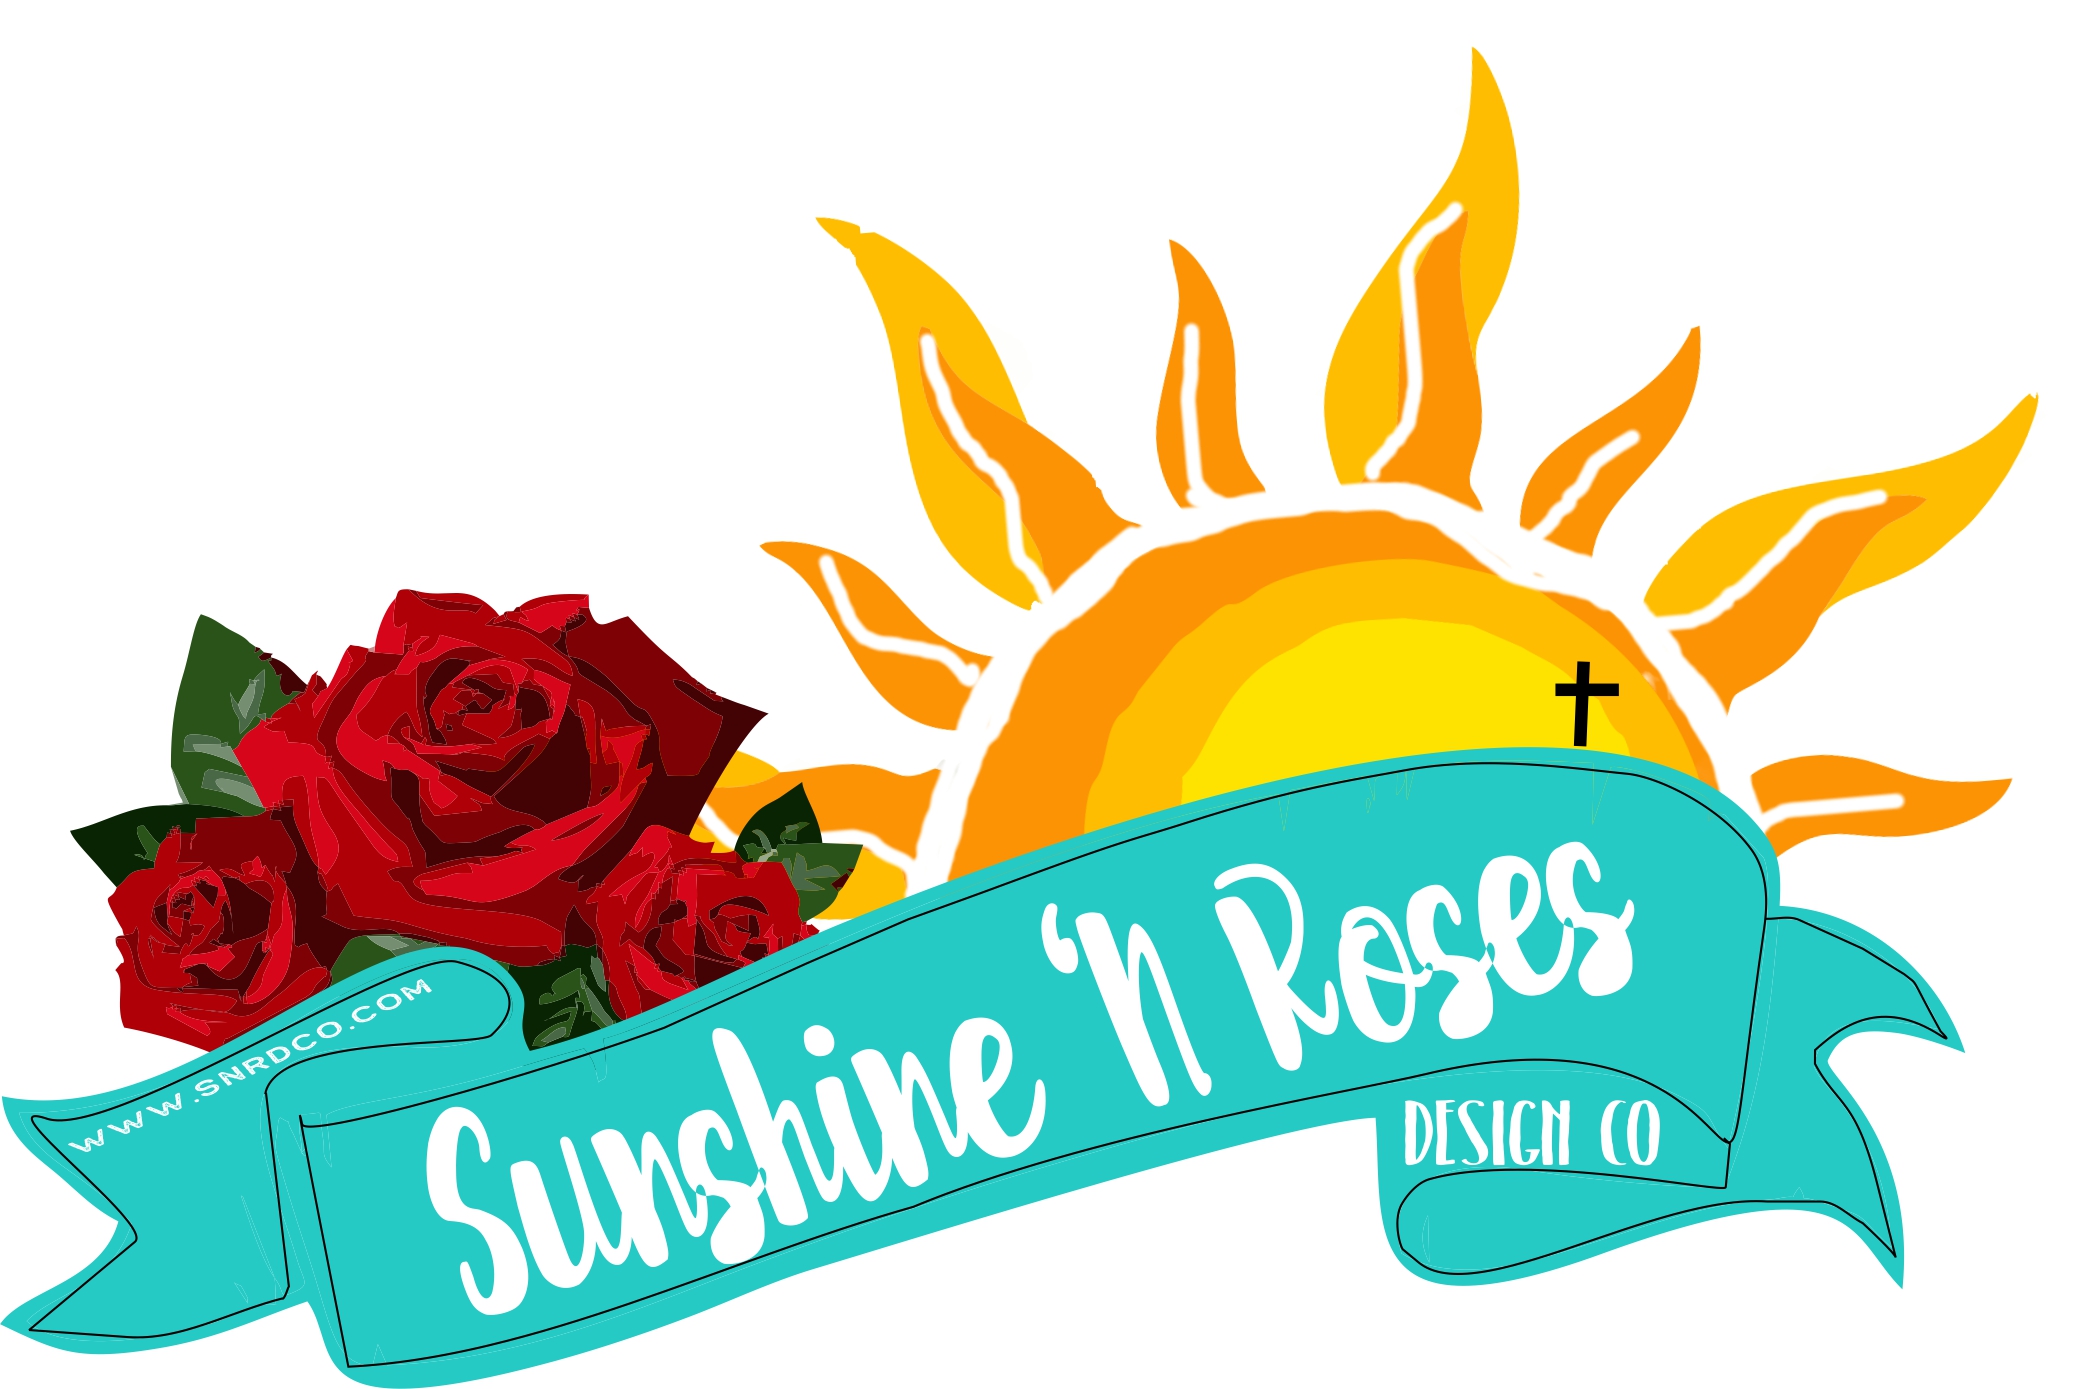 Sunshine N Roses Design Co